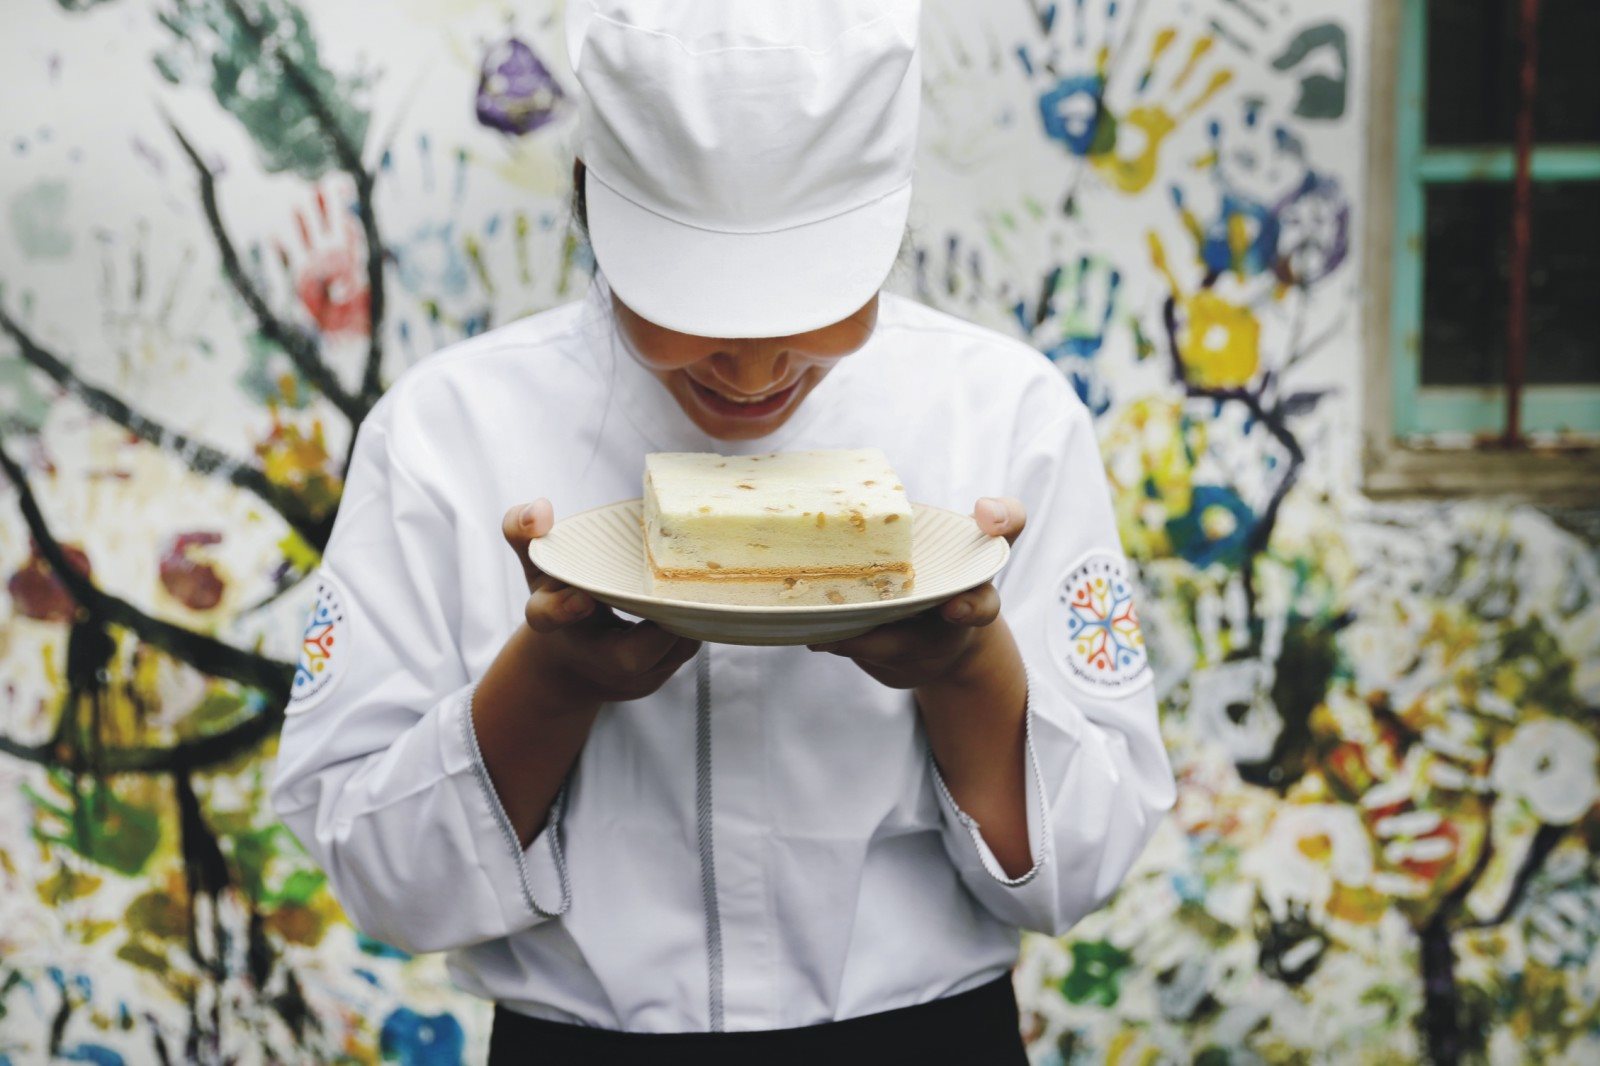 純濃豆漿加上蜜製黃豆的豆漿蛋糕，是小草職研烘焙坊孩子們用心手工烘焙的糕點